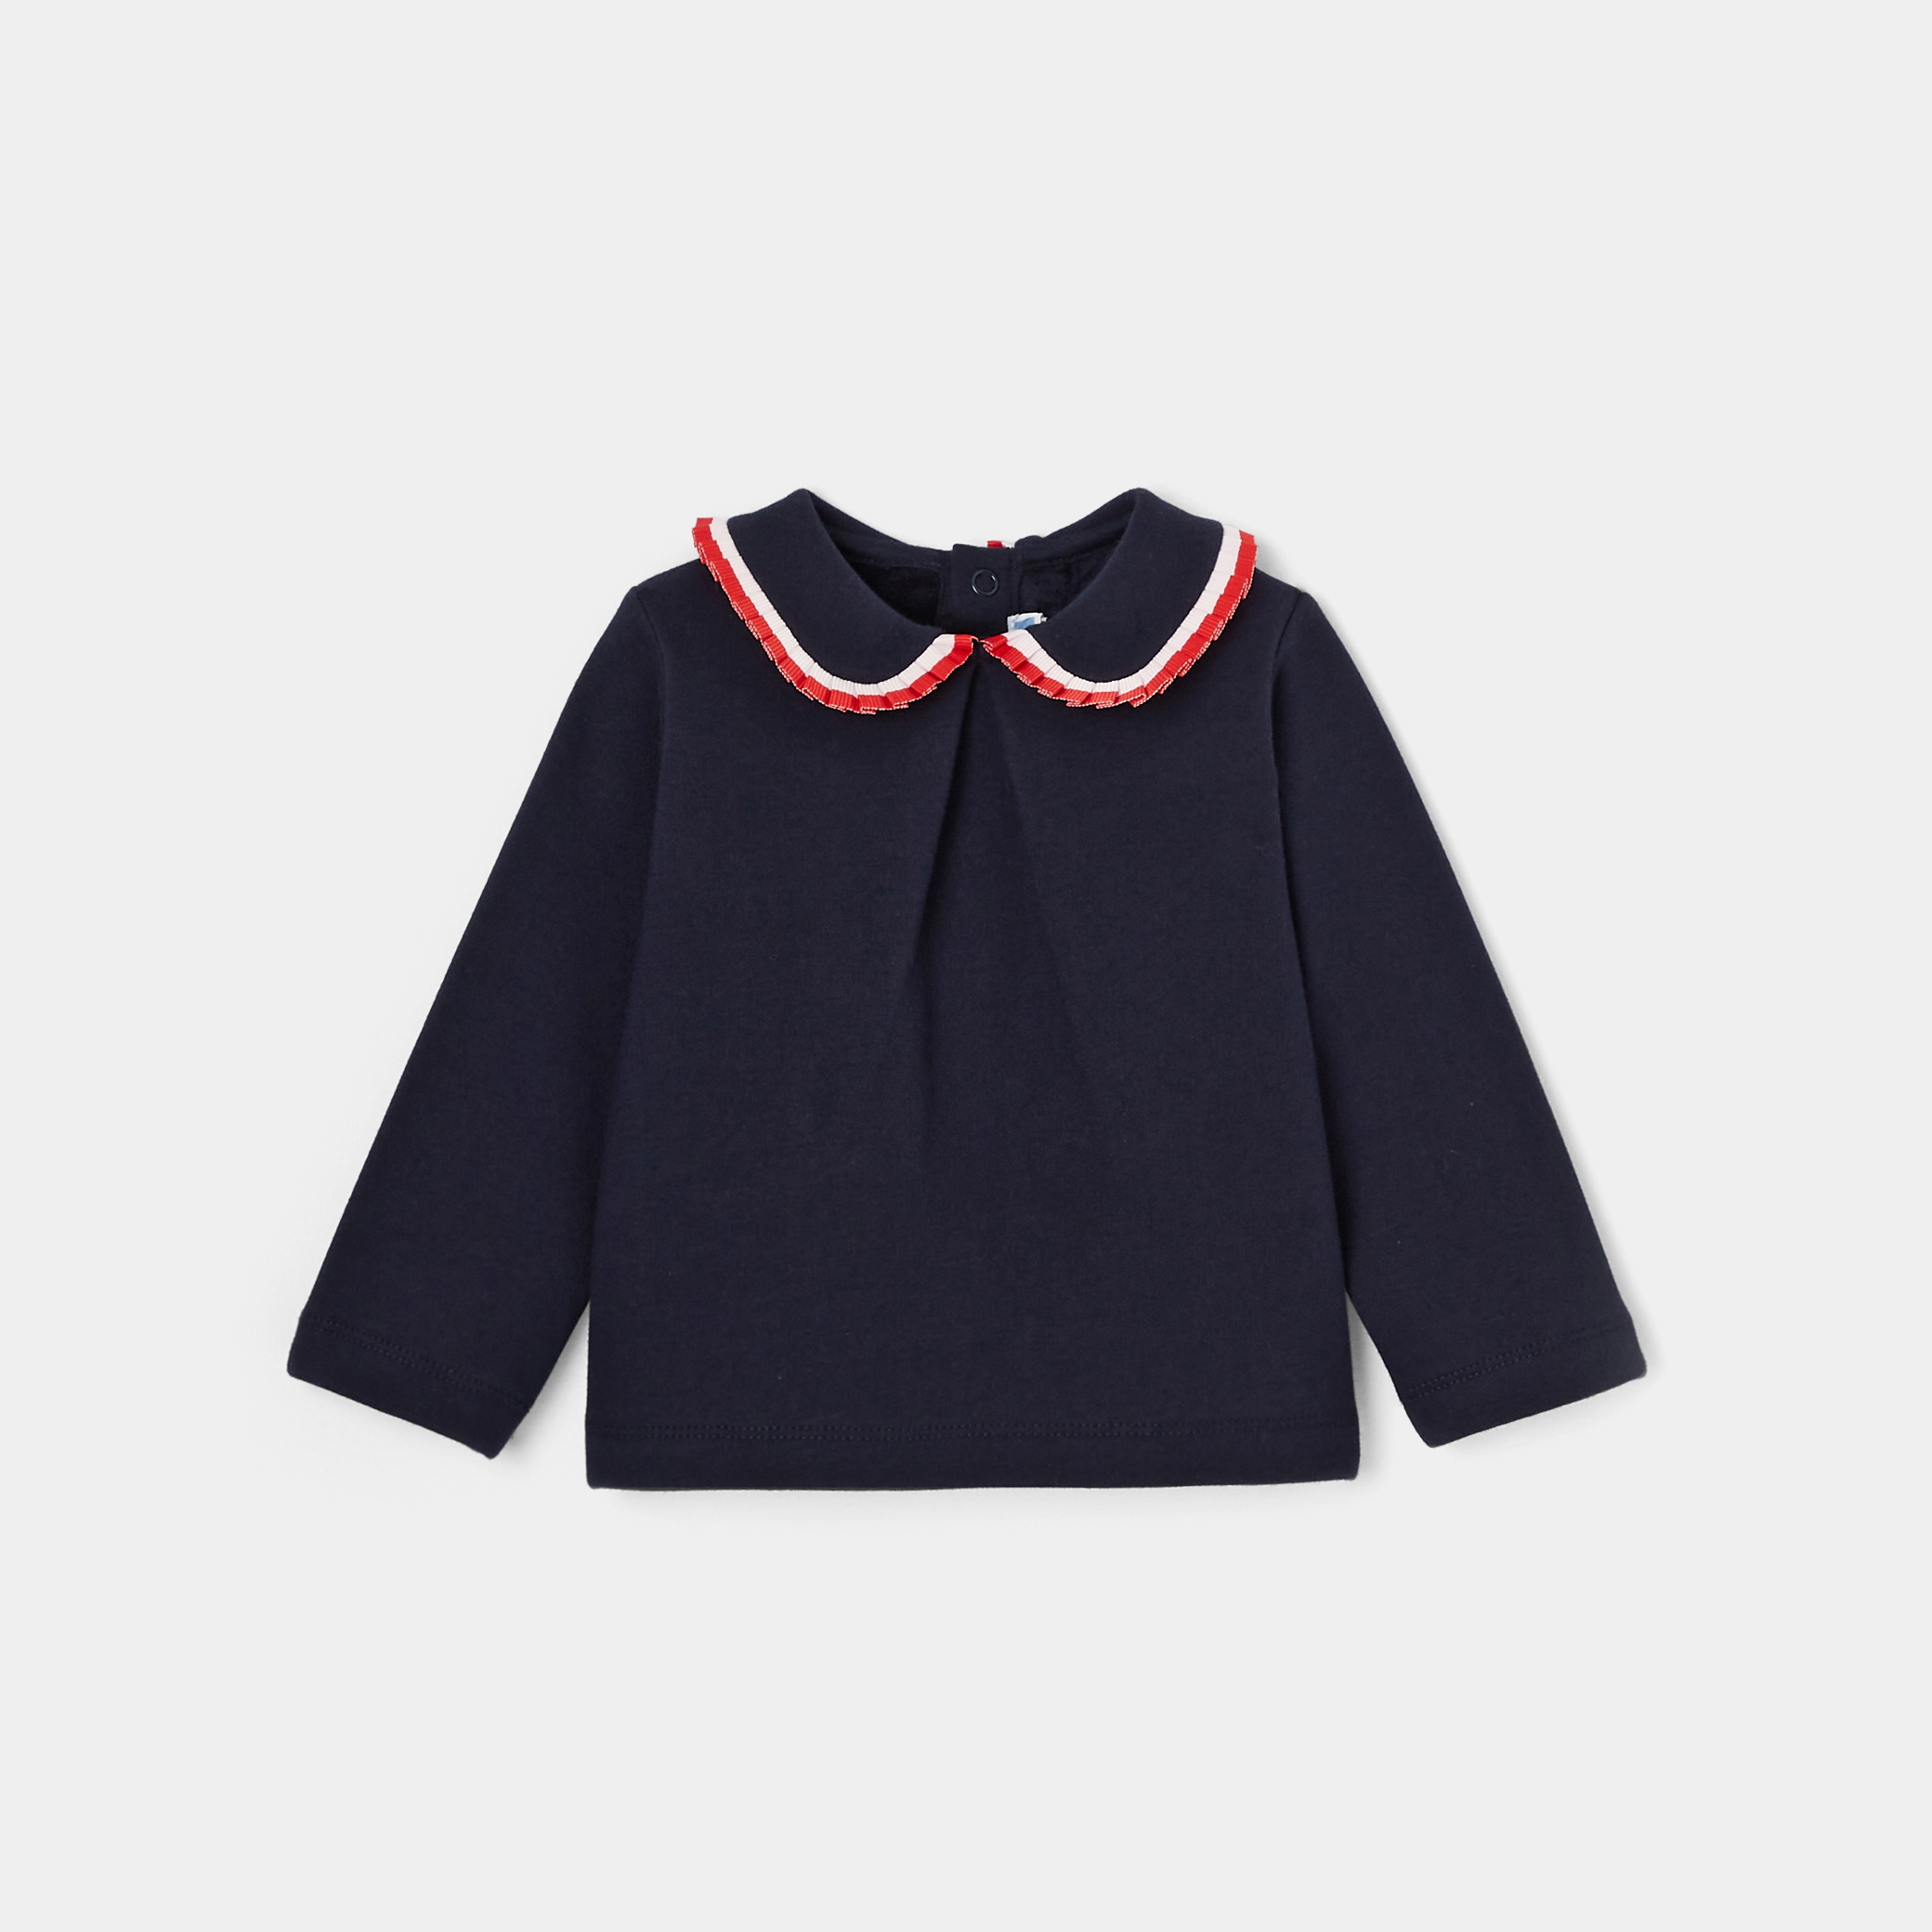 Toddler girl sweatshirt with Peter Pan collar